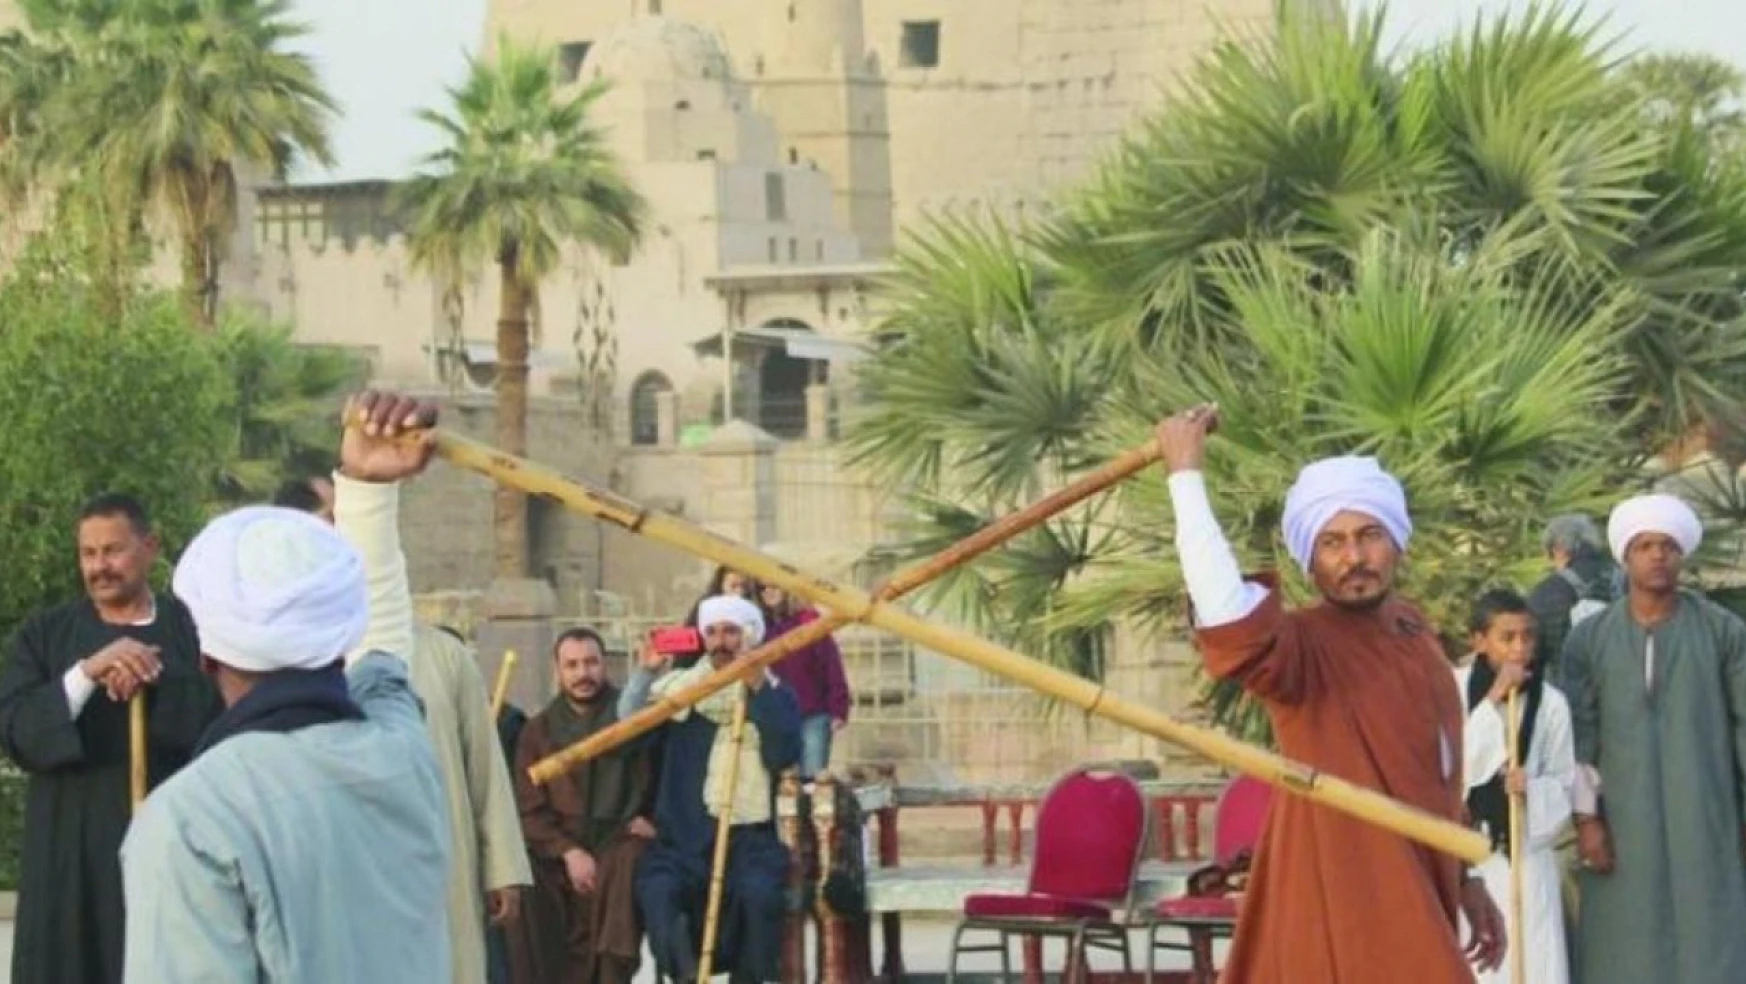 Nil Festivali: Mısır'ın kalbinde bir kültürel mirasın canlanışı